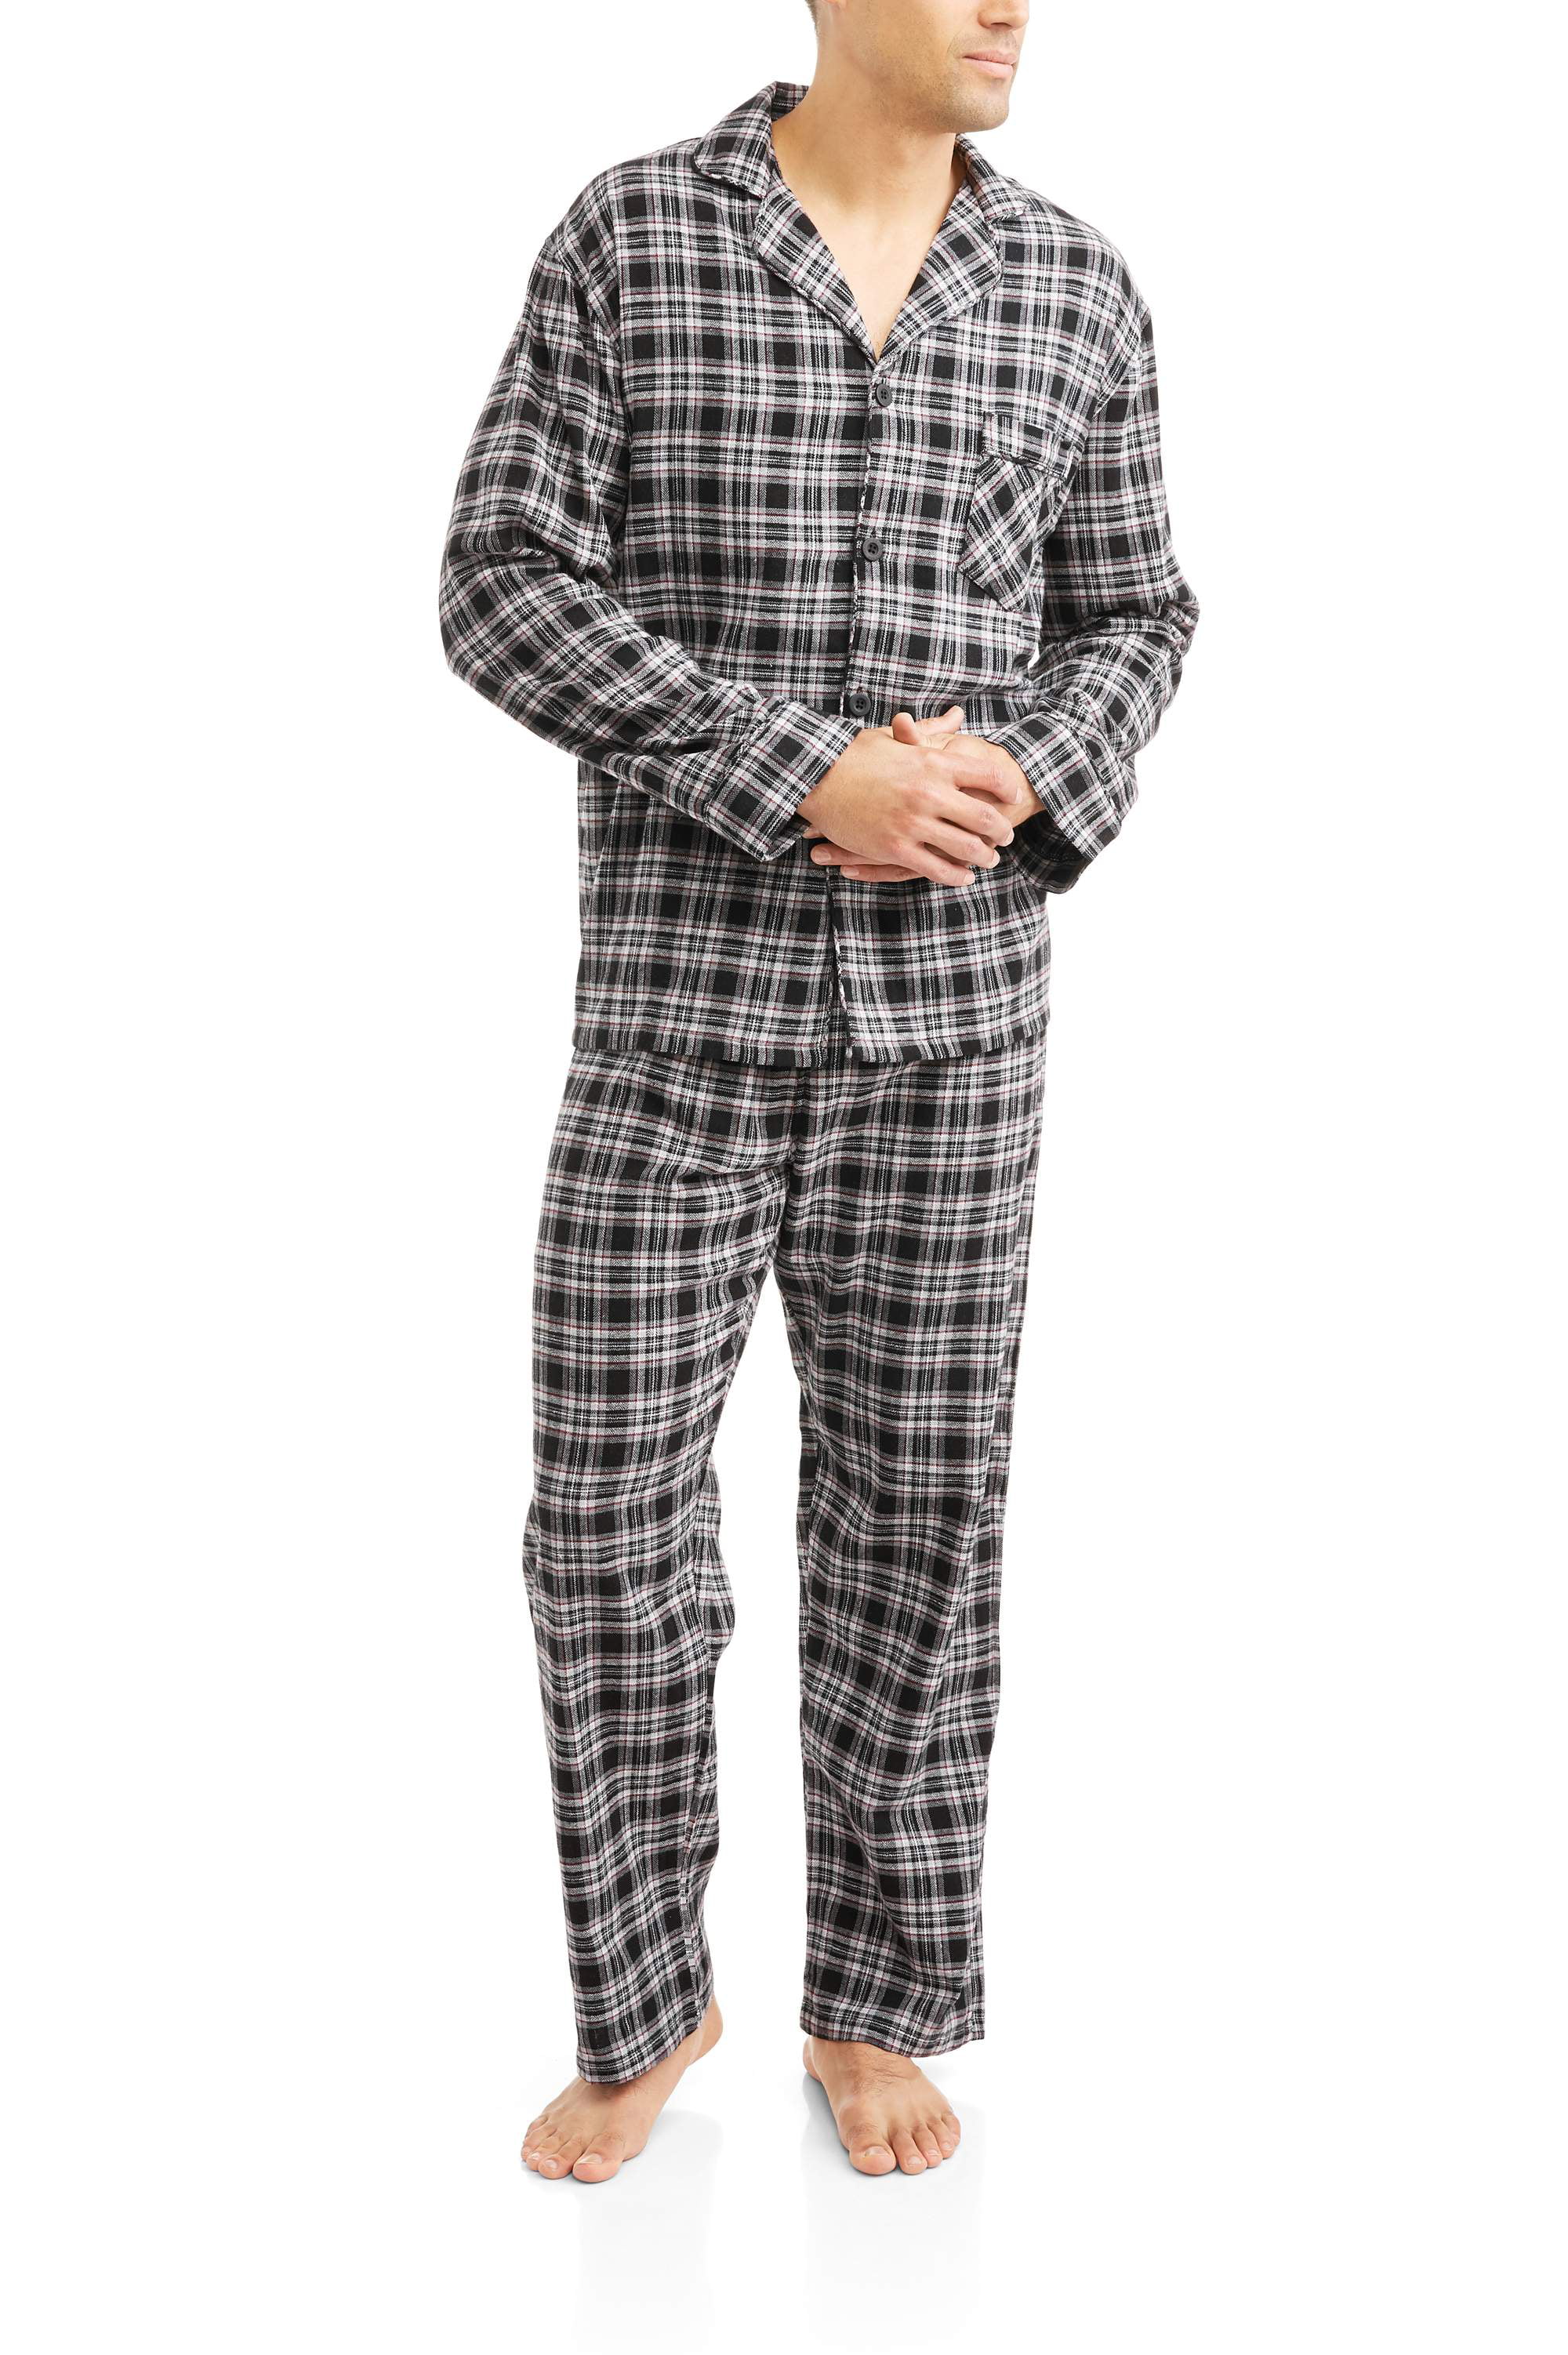 Hanes - Hanes Men's Flannel Pajama Set - Walmart.com - Walmart.com